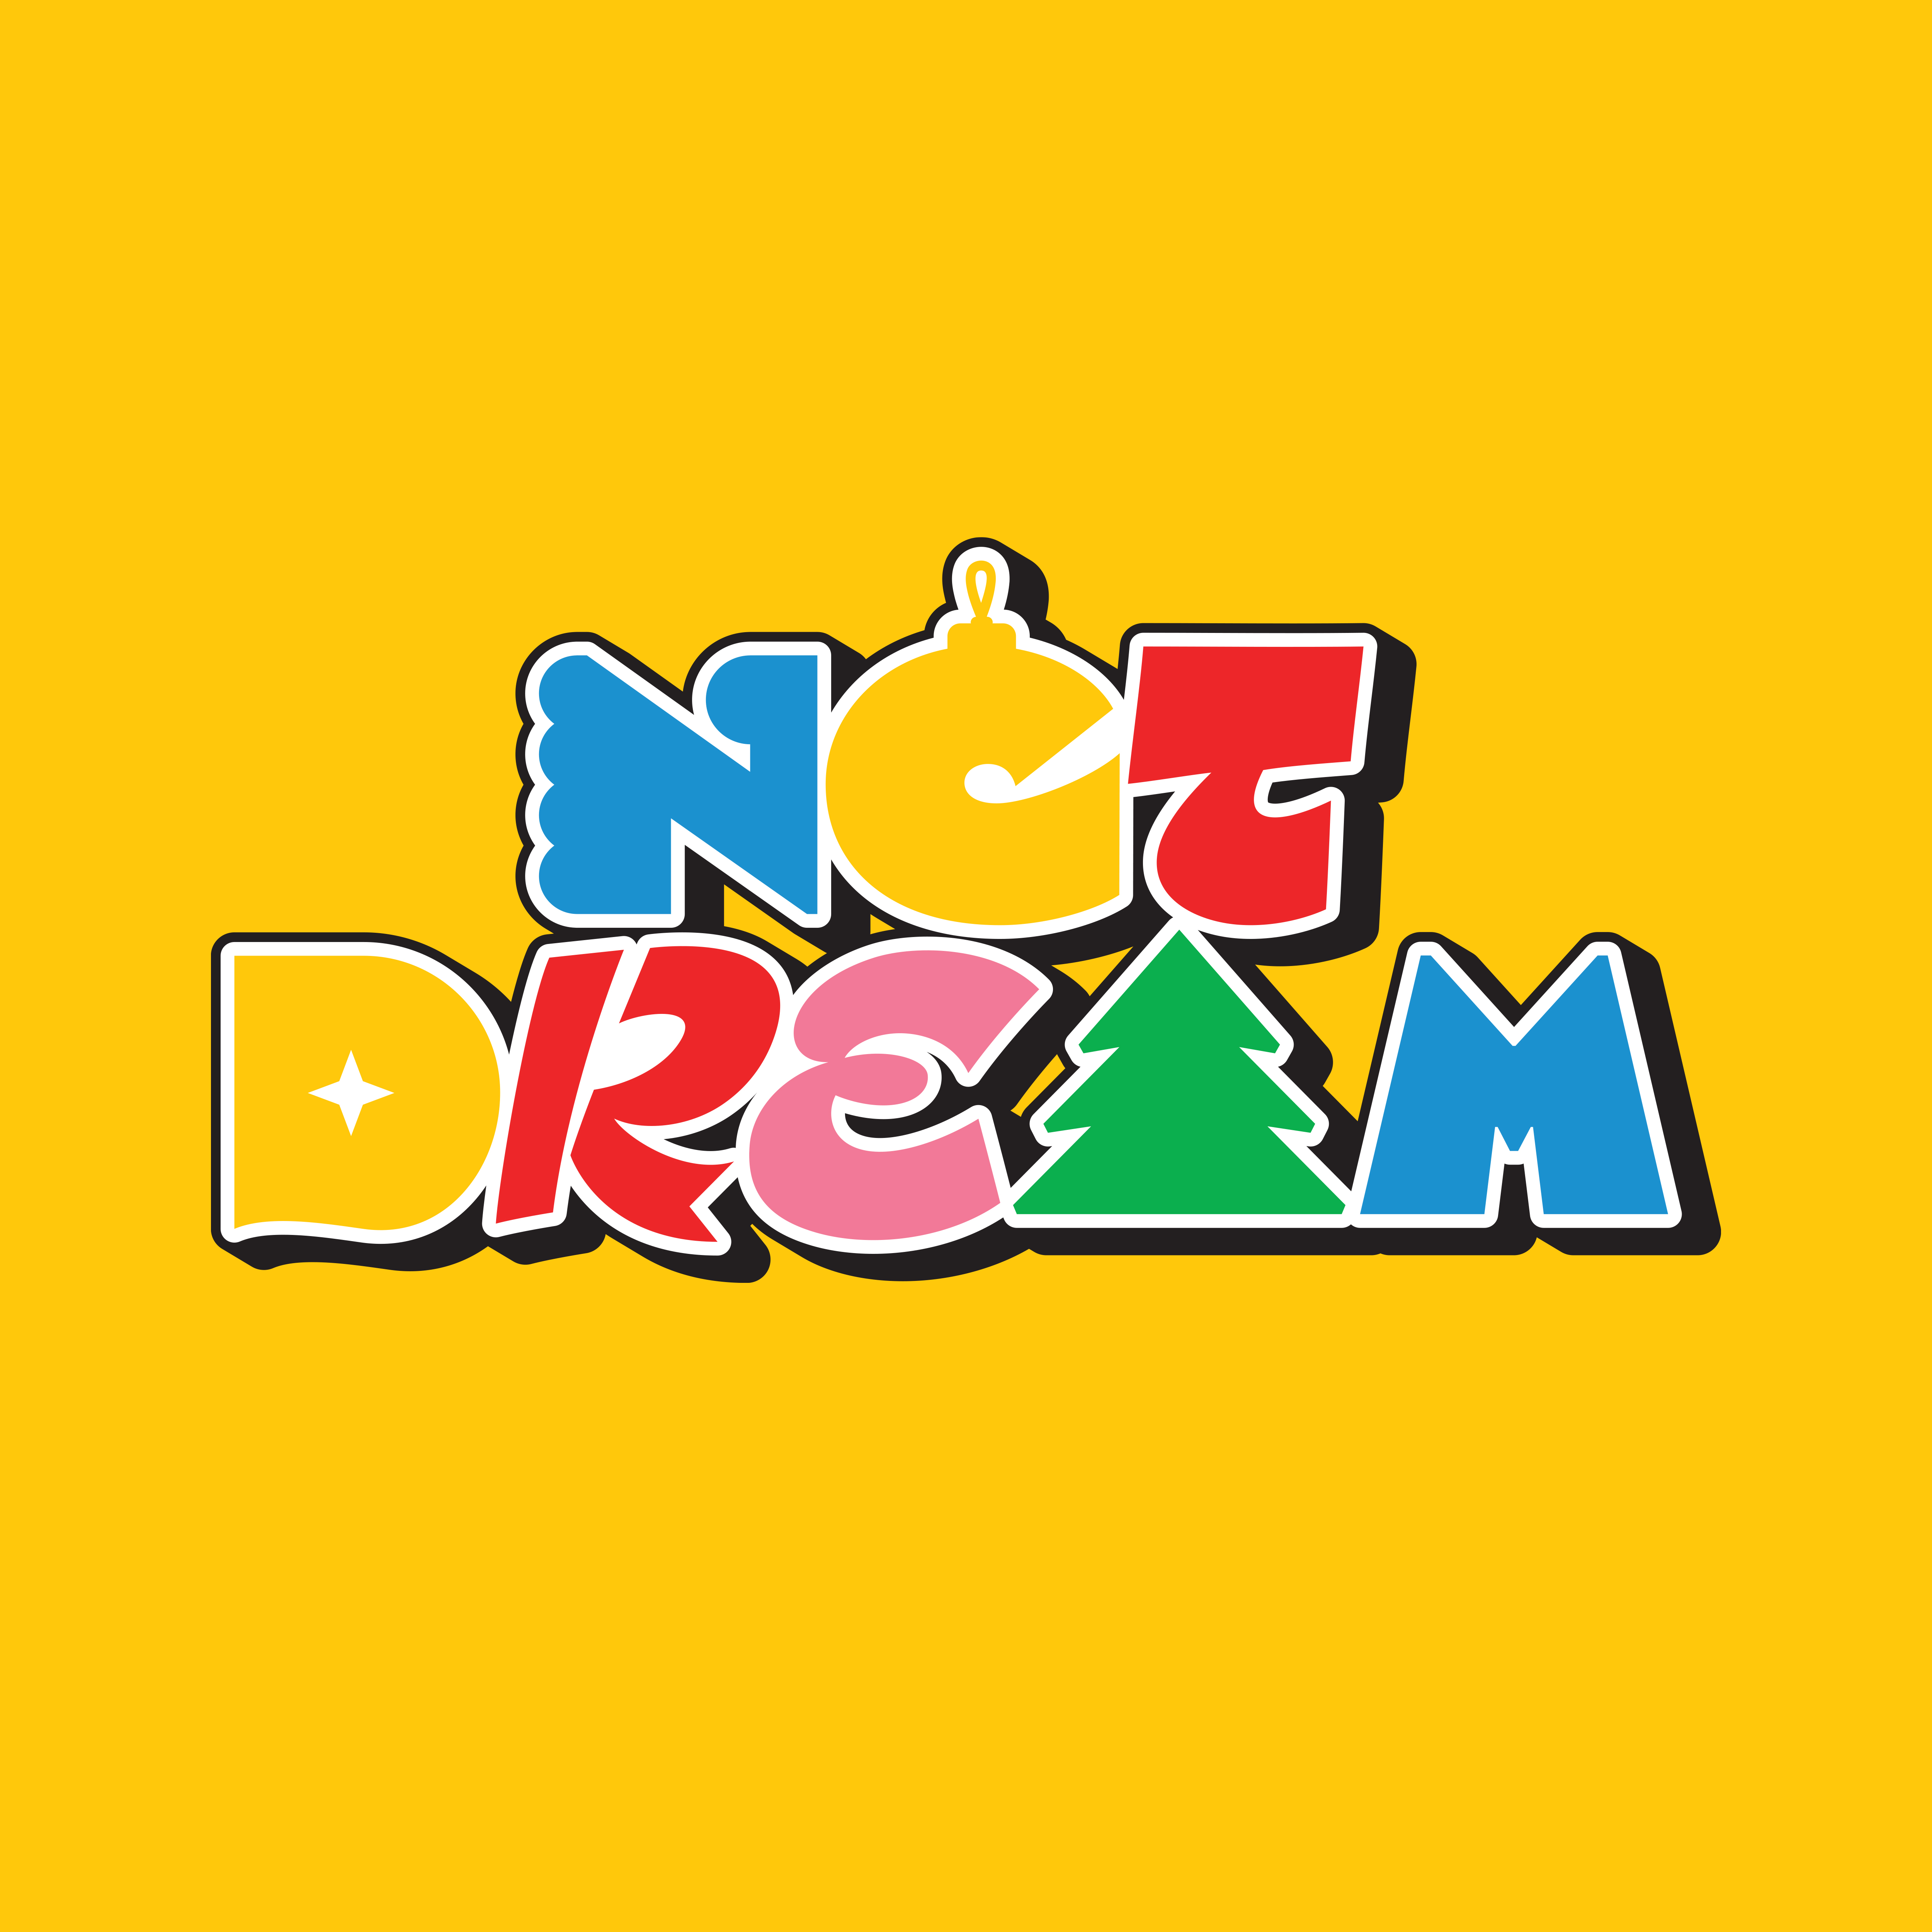 [拆卡专 限量15张] NCT DREAM - Winter Special Mini Album [Candy] (Special Ver.) (初回限量版)_罗渽民吧